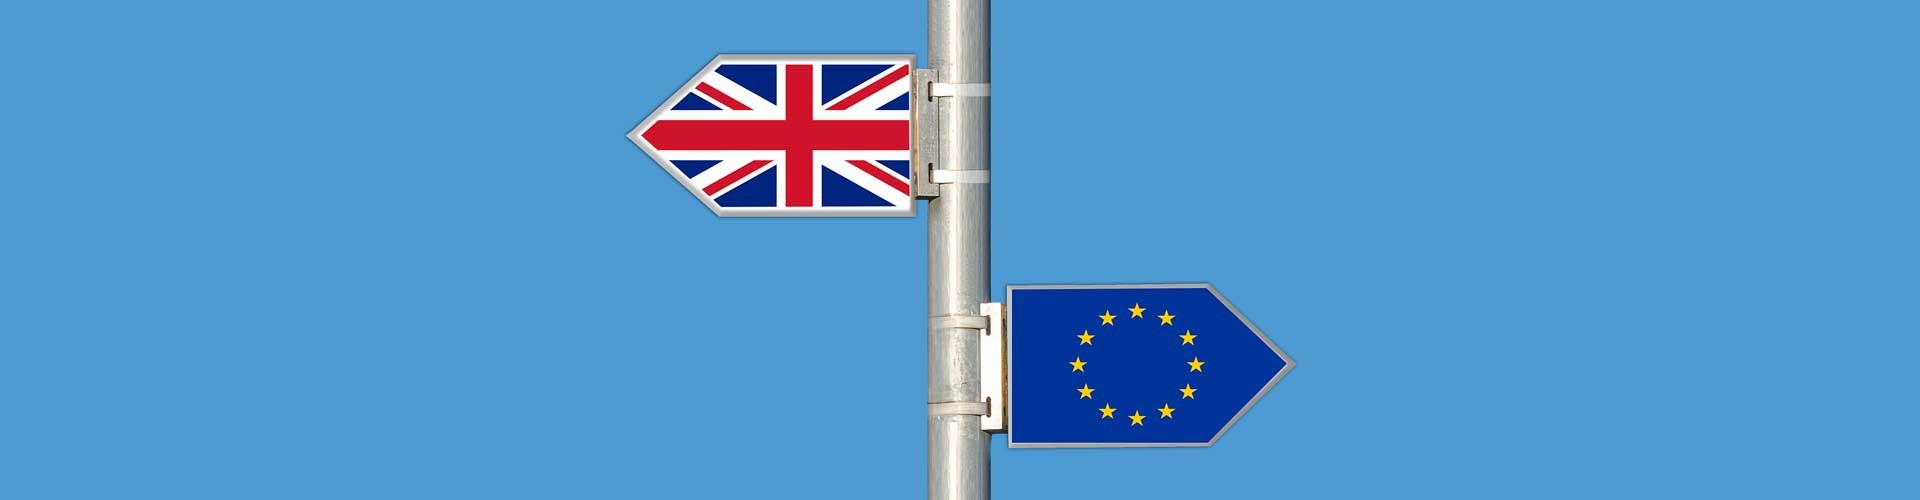 EU brexit flags signpost